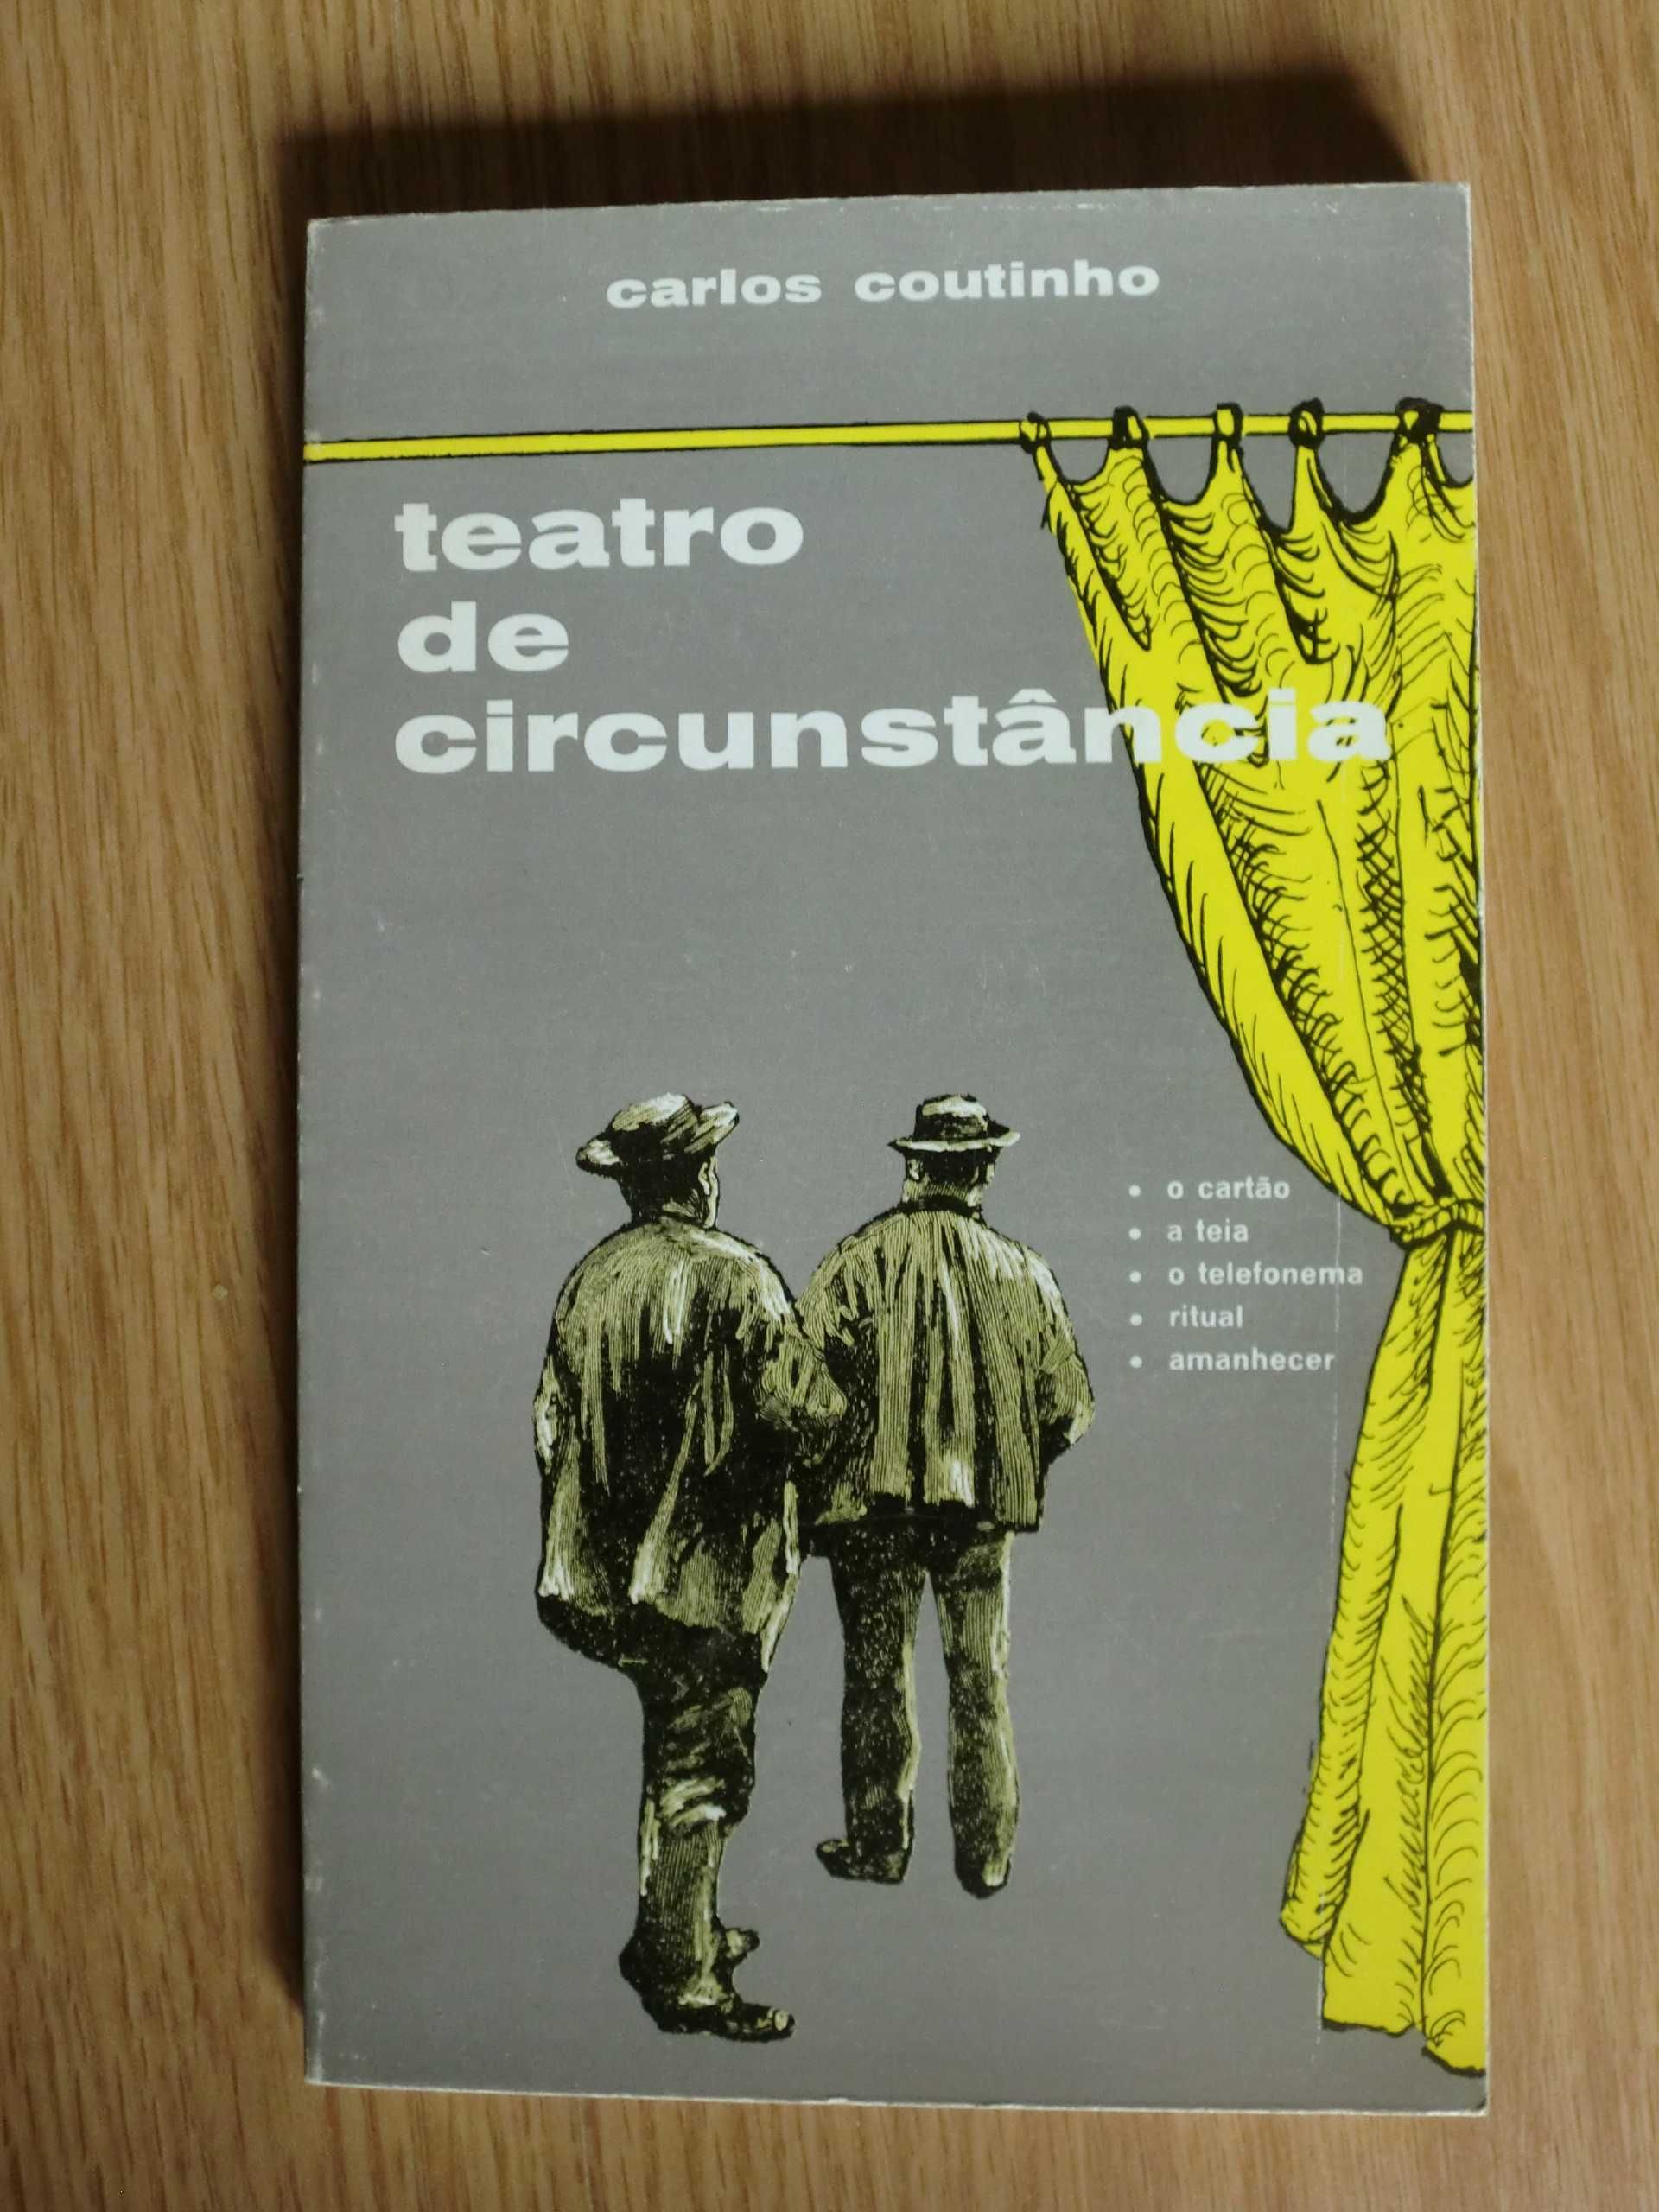 Teatro de Circunstância
de Carlos Coutinho